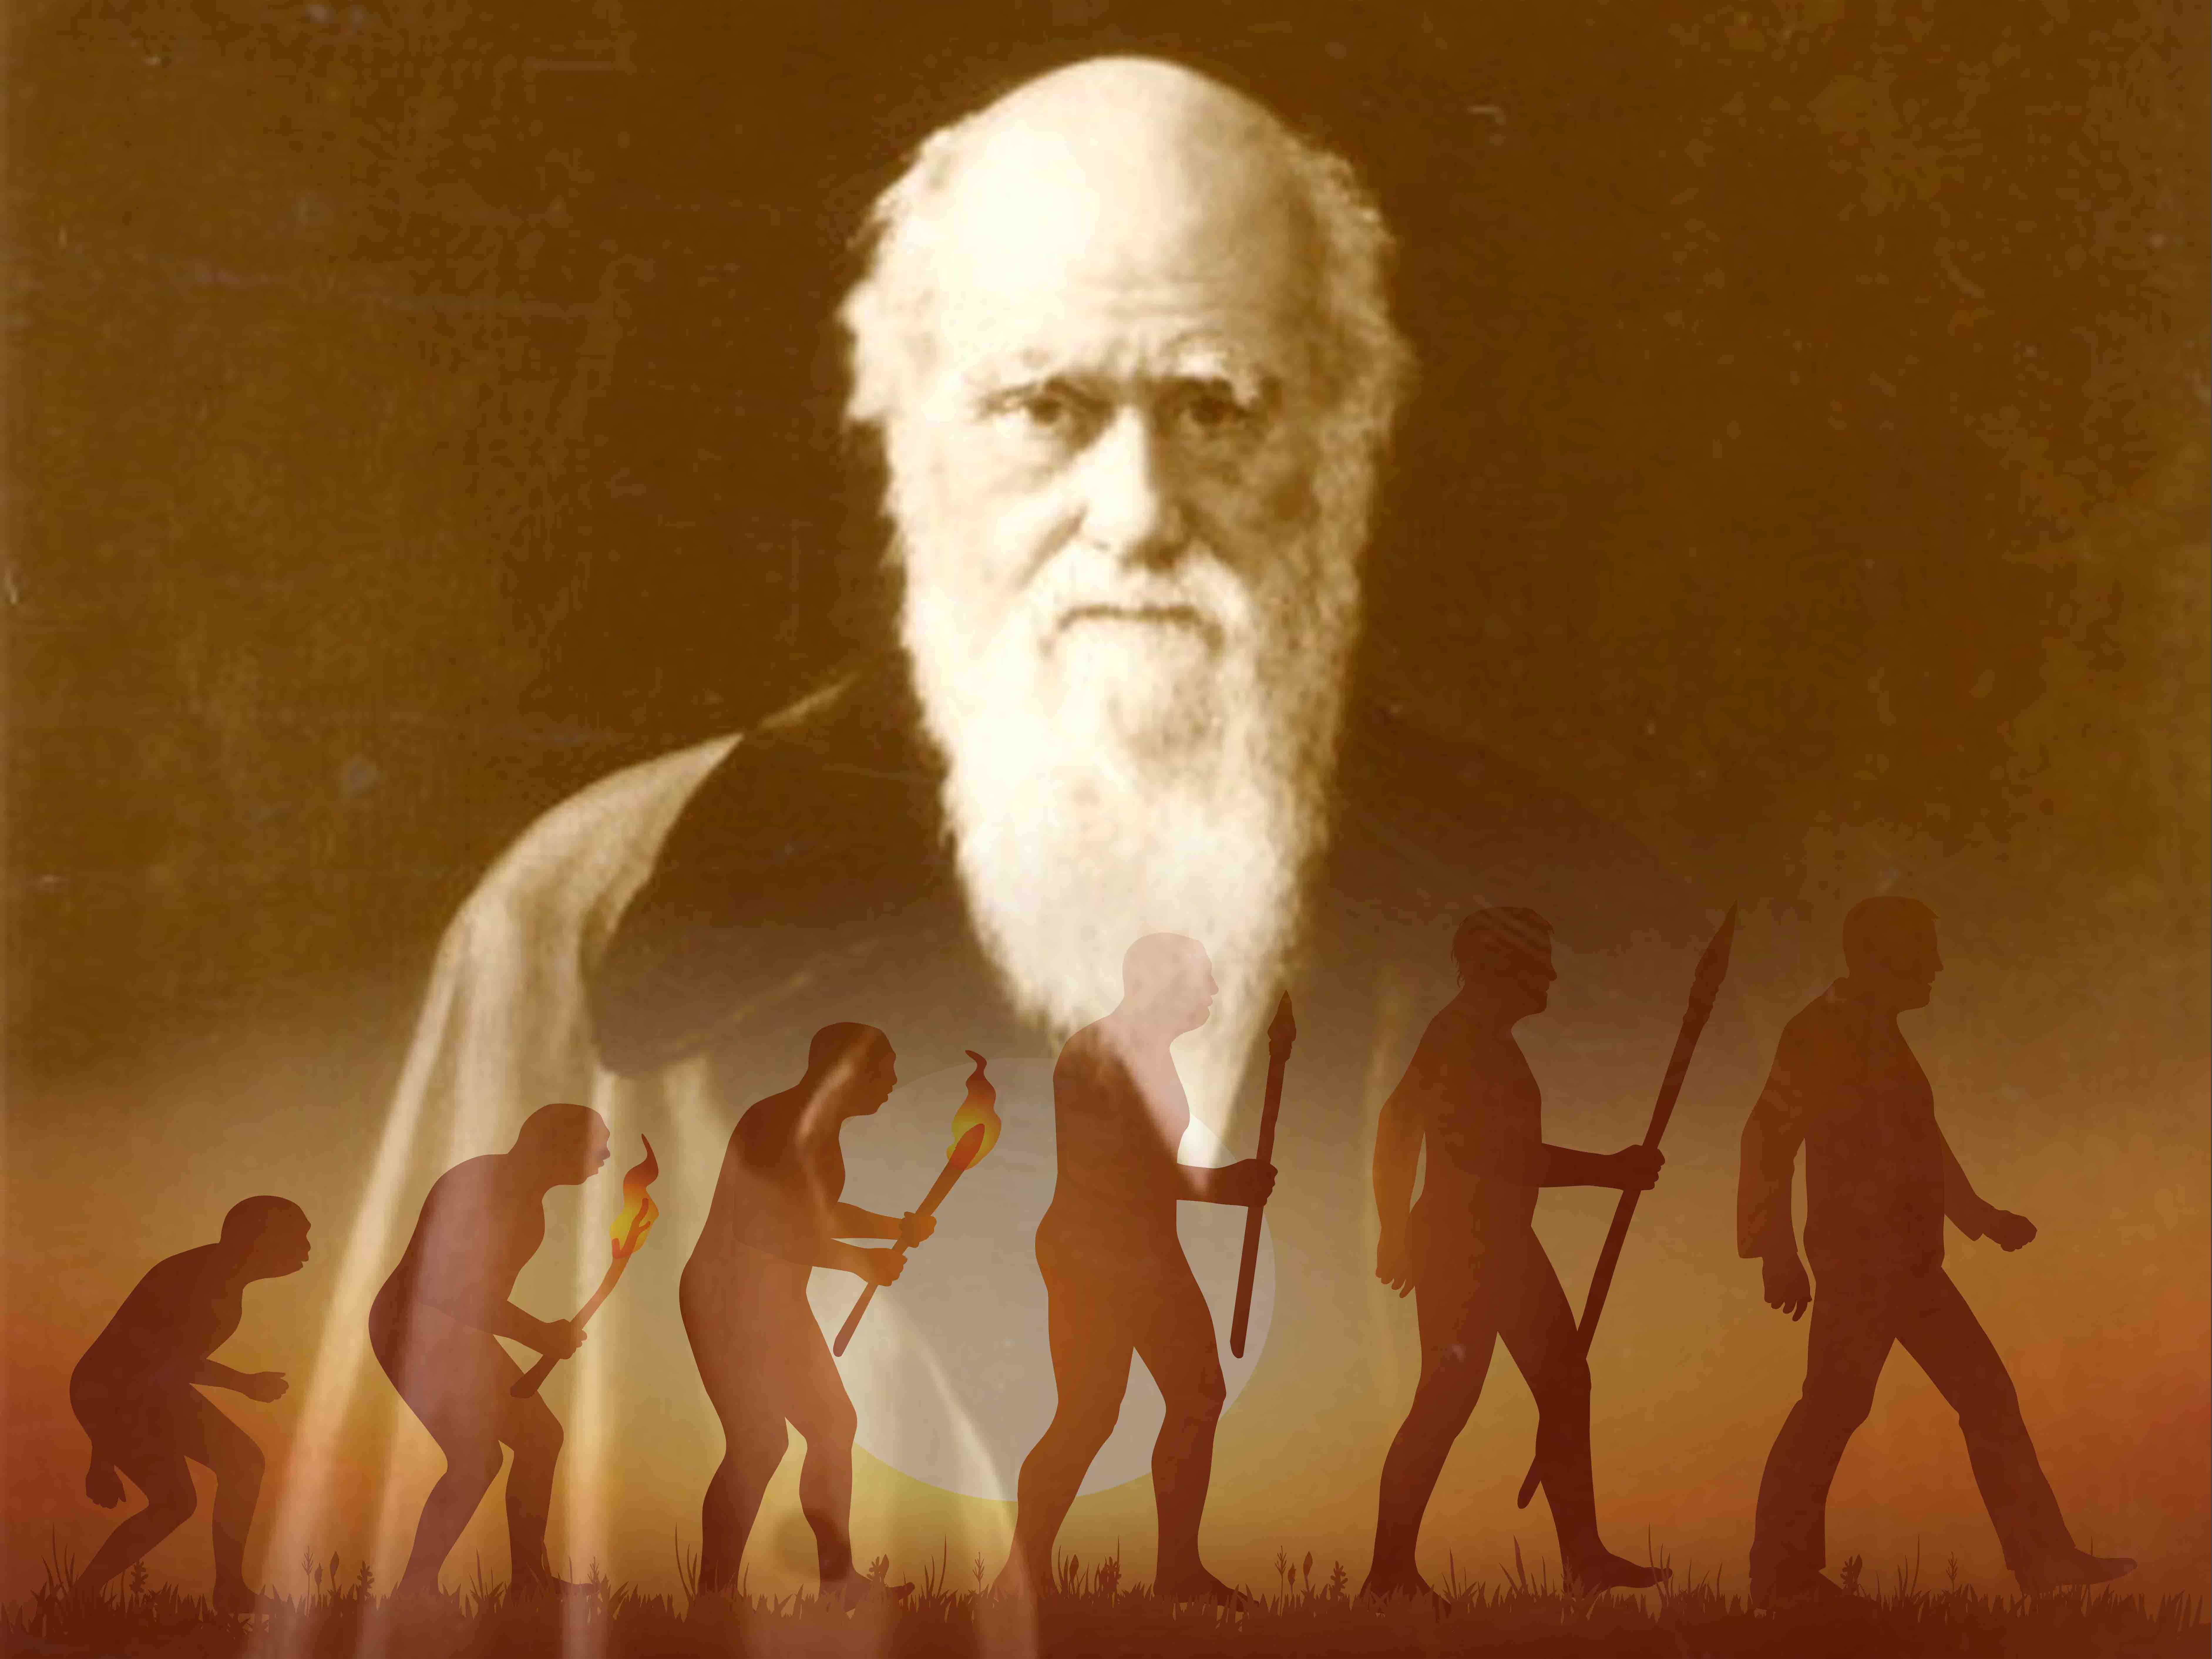 Vén màn bí ẩn nguyên nhân nỗi bất hạnh của Darwin - cha đẻ "Thuyết tiến hóa": Kỳ I